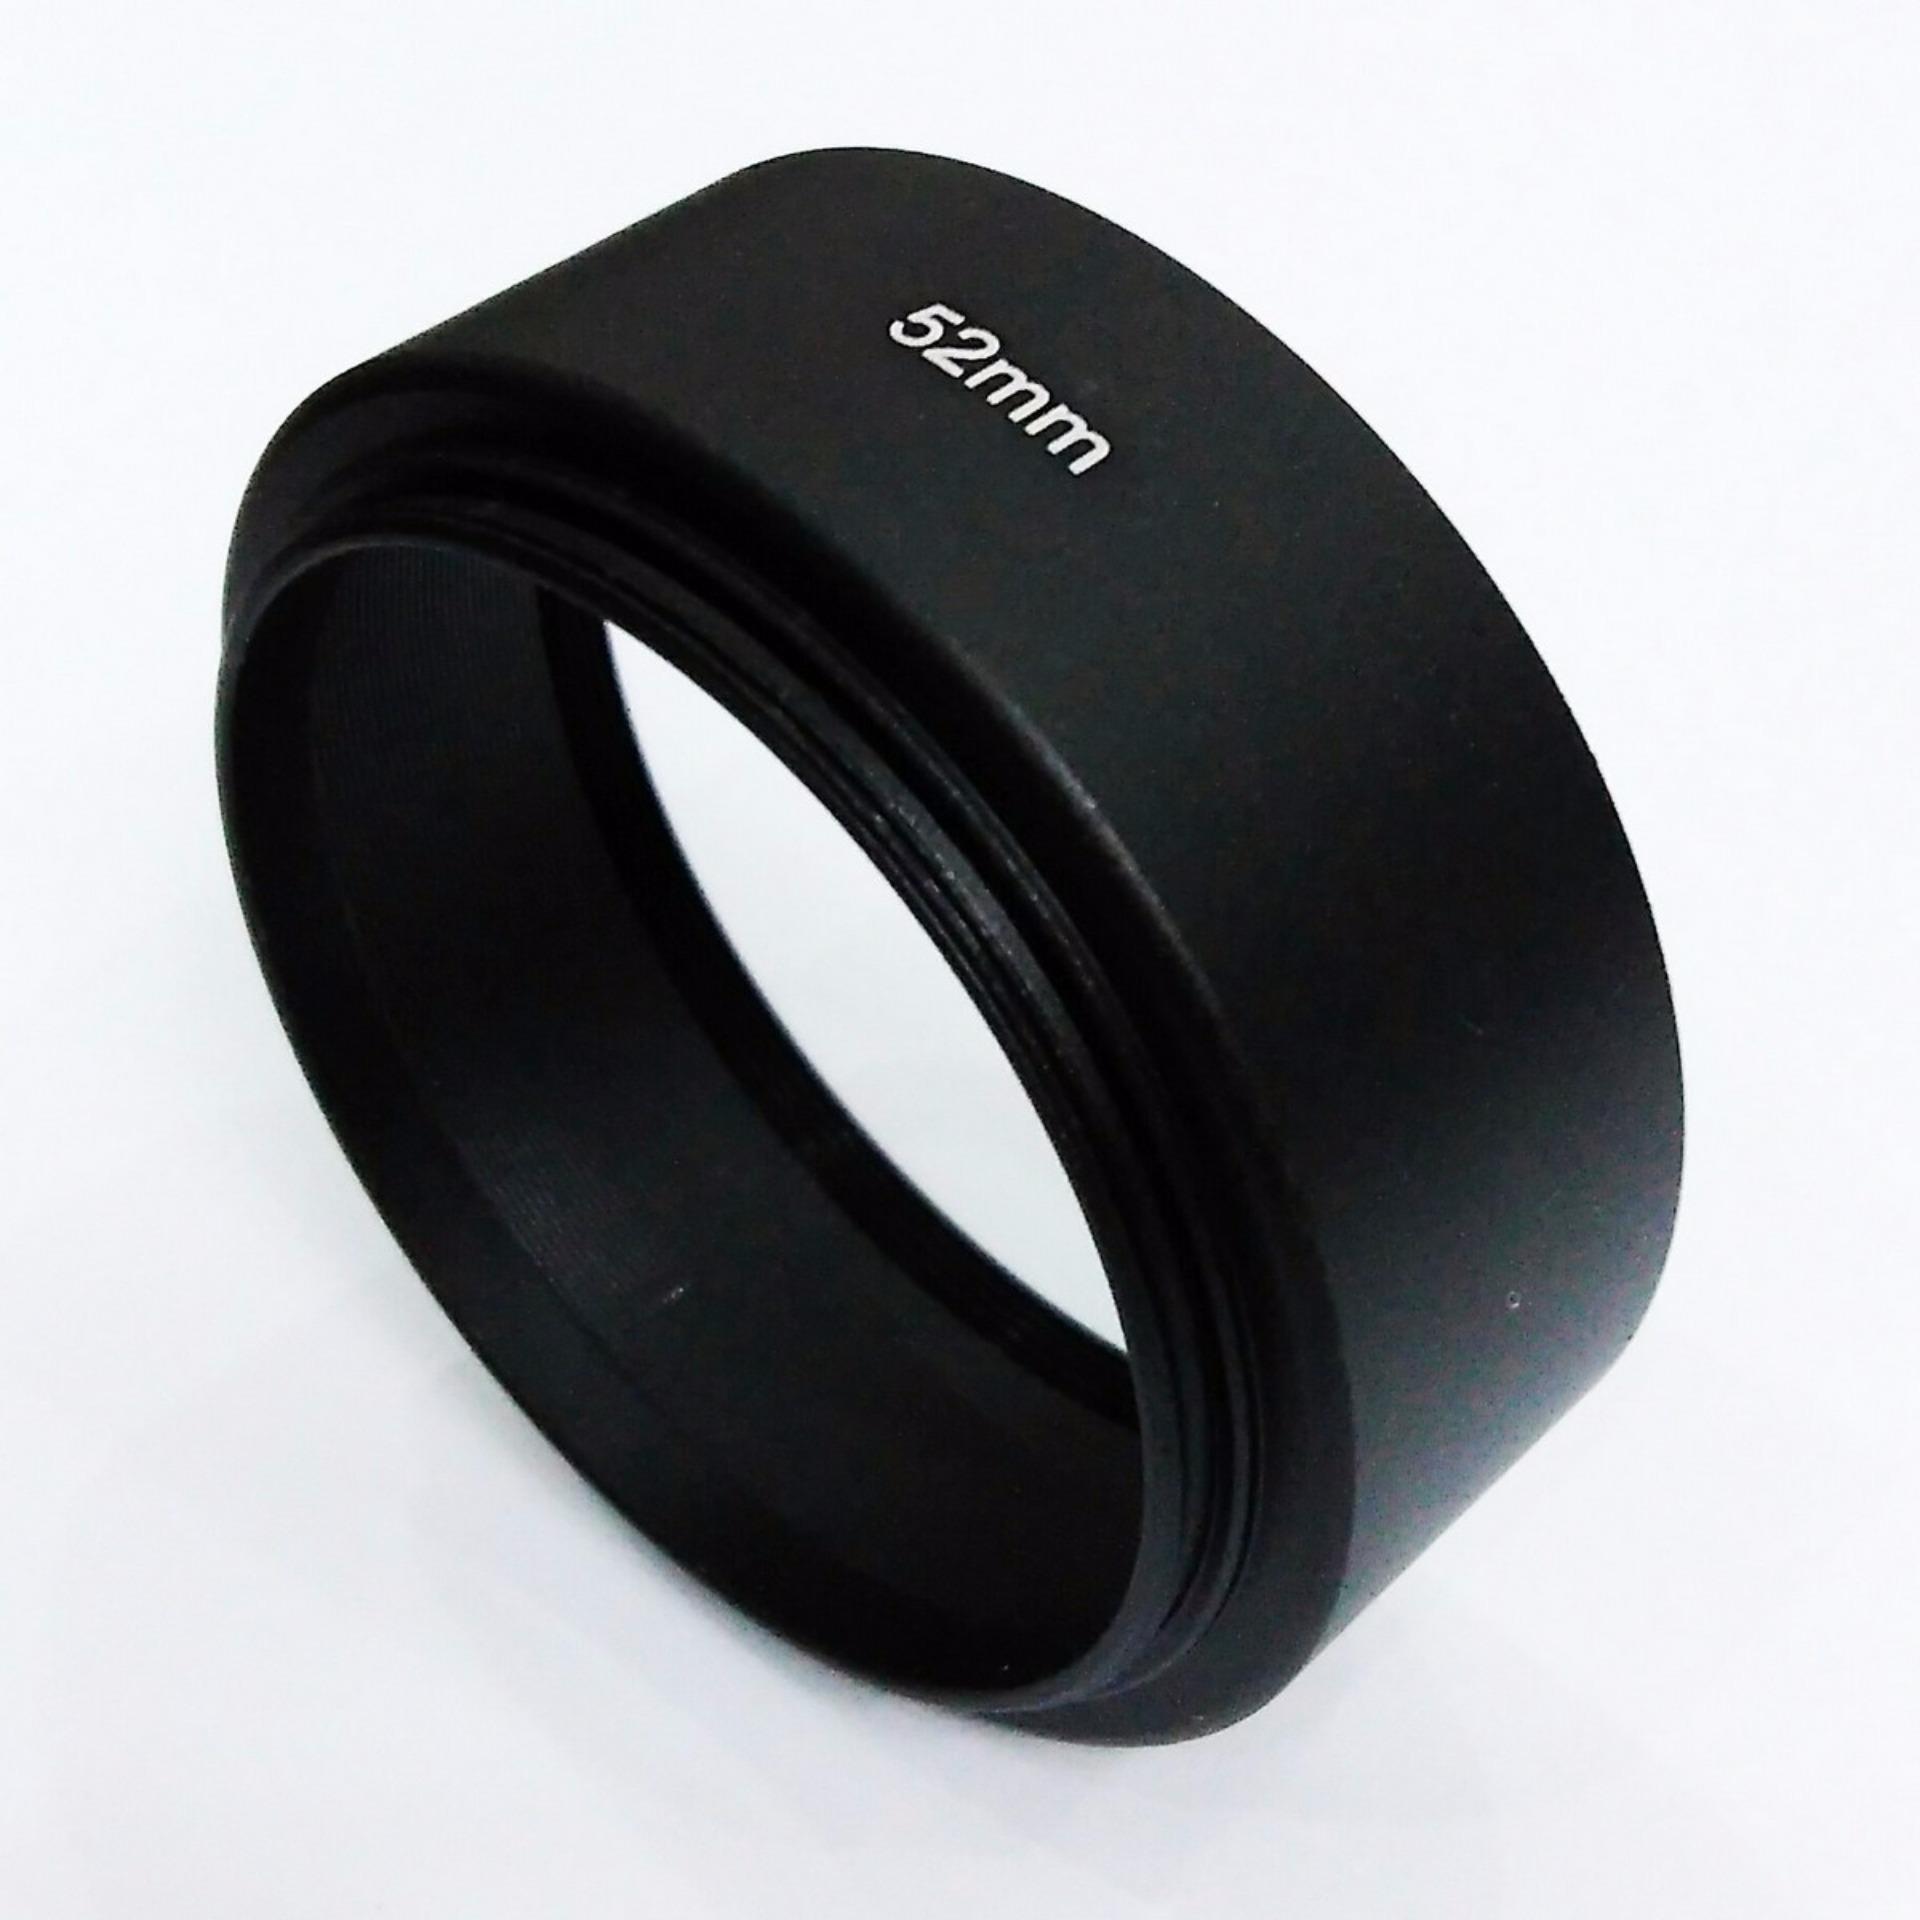 Lens hood kim loại size 52mm